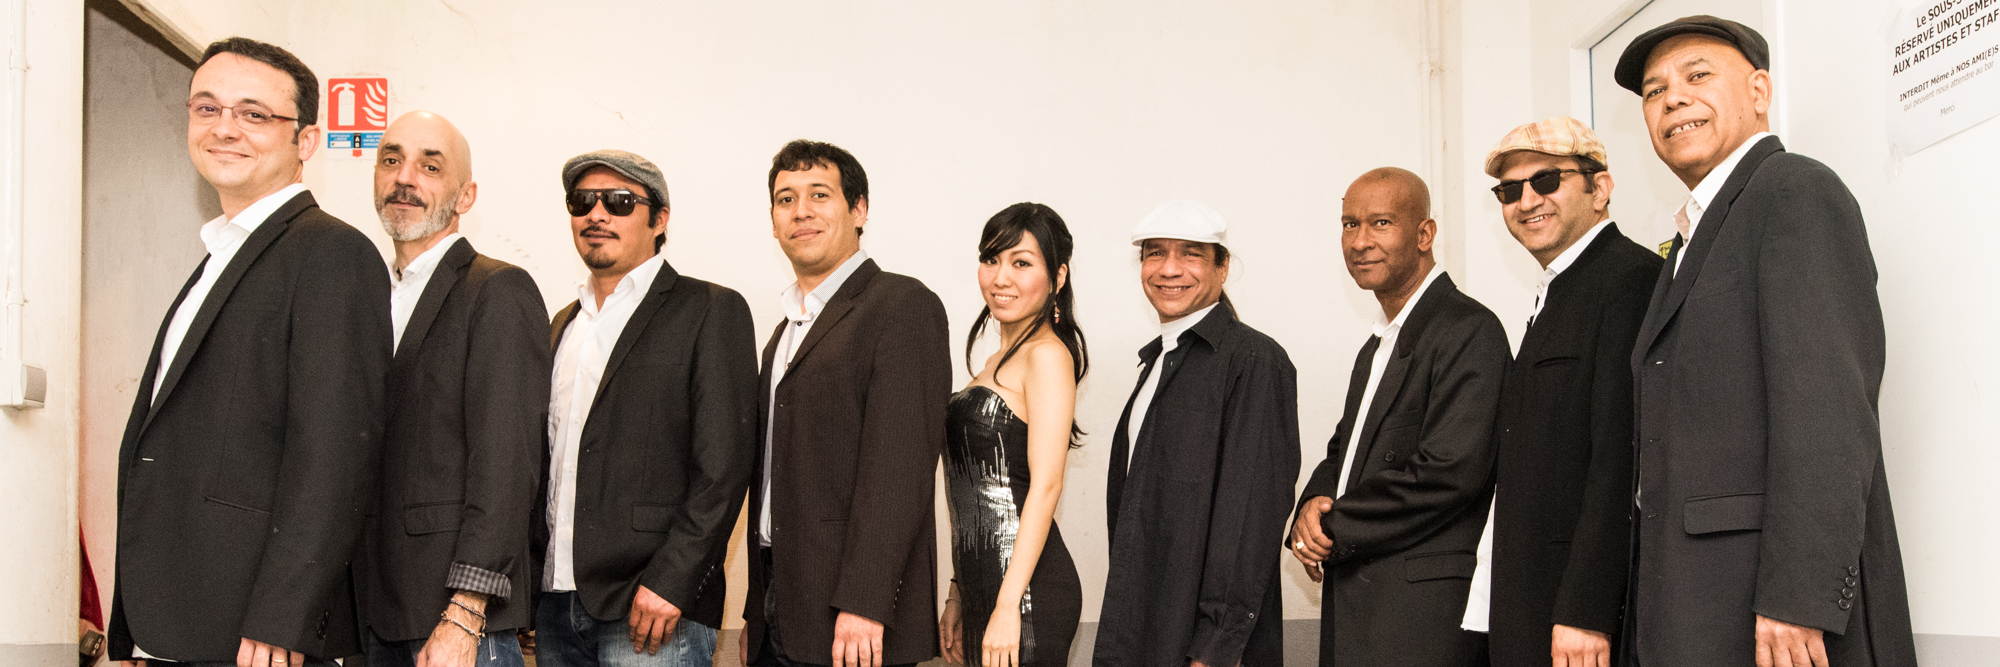 La Espectacular, groupe de musique Salsa en représentation à Rhône - photo de couverture n° 2